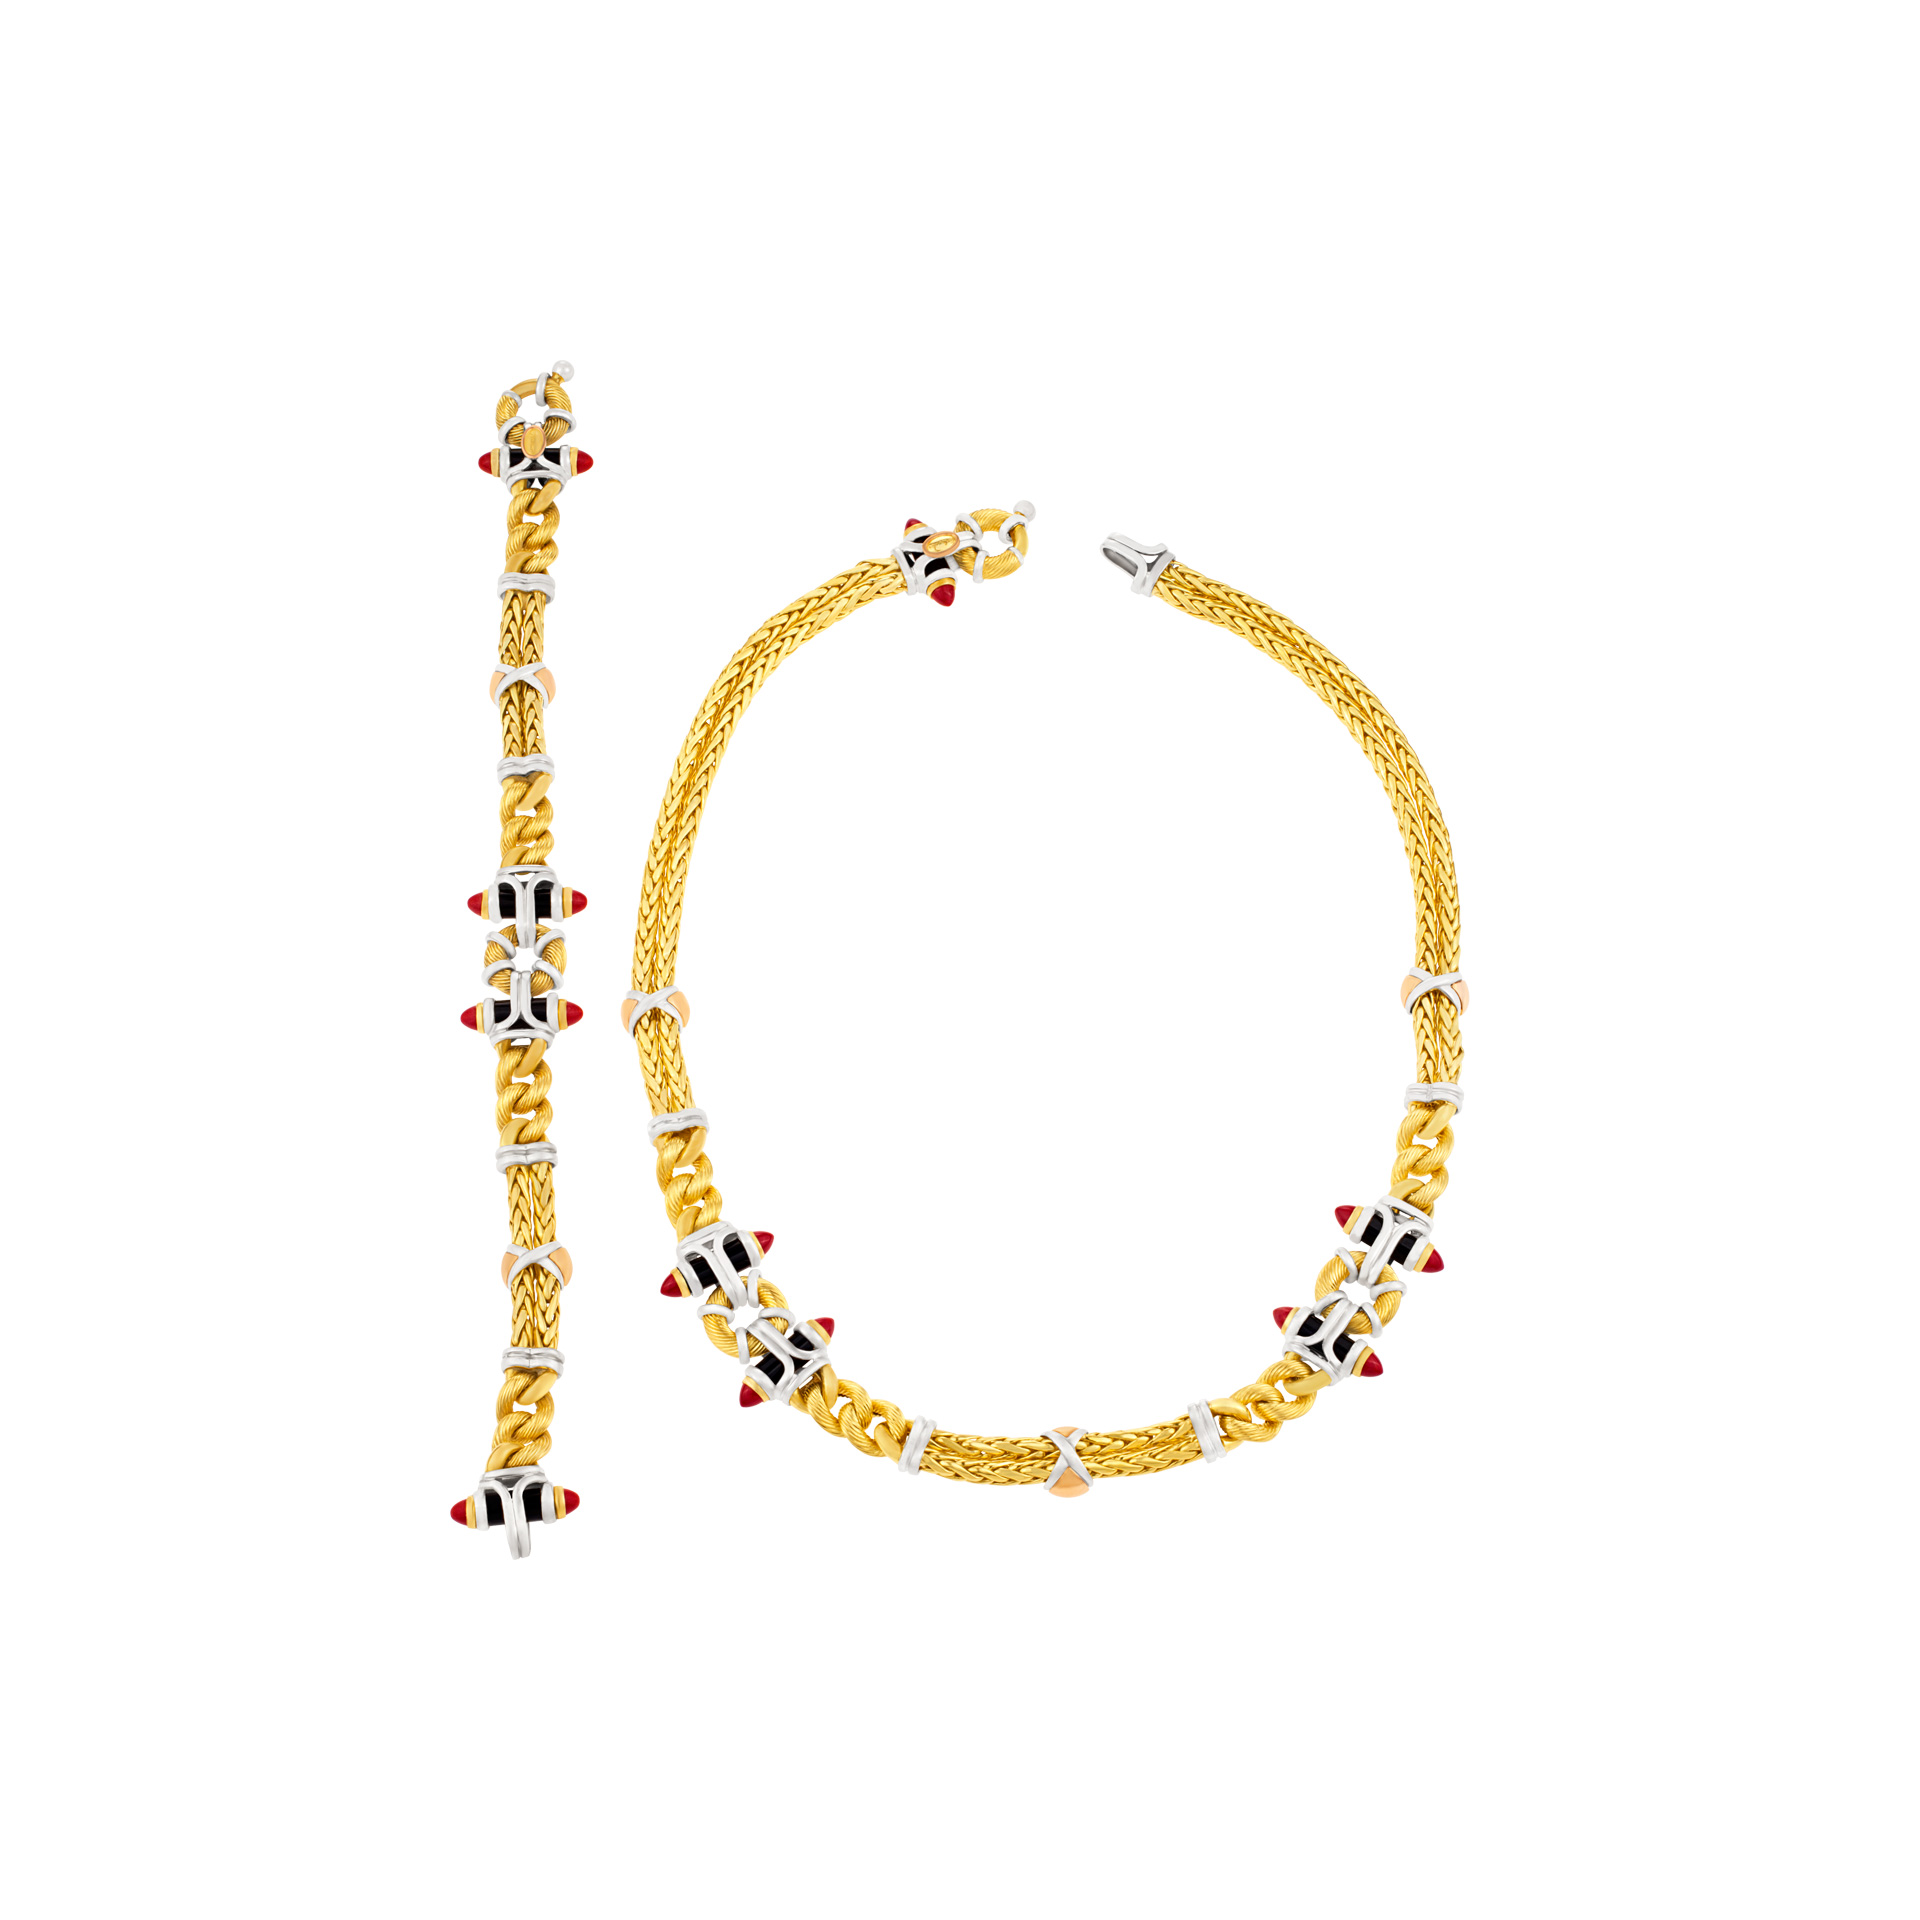 Fashionable 18k yellow gold necklace and bracelet set image 1